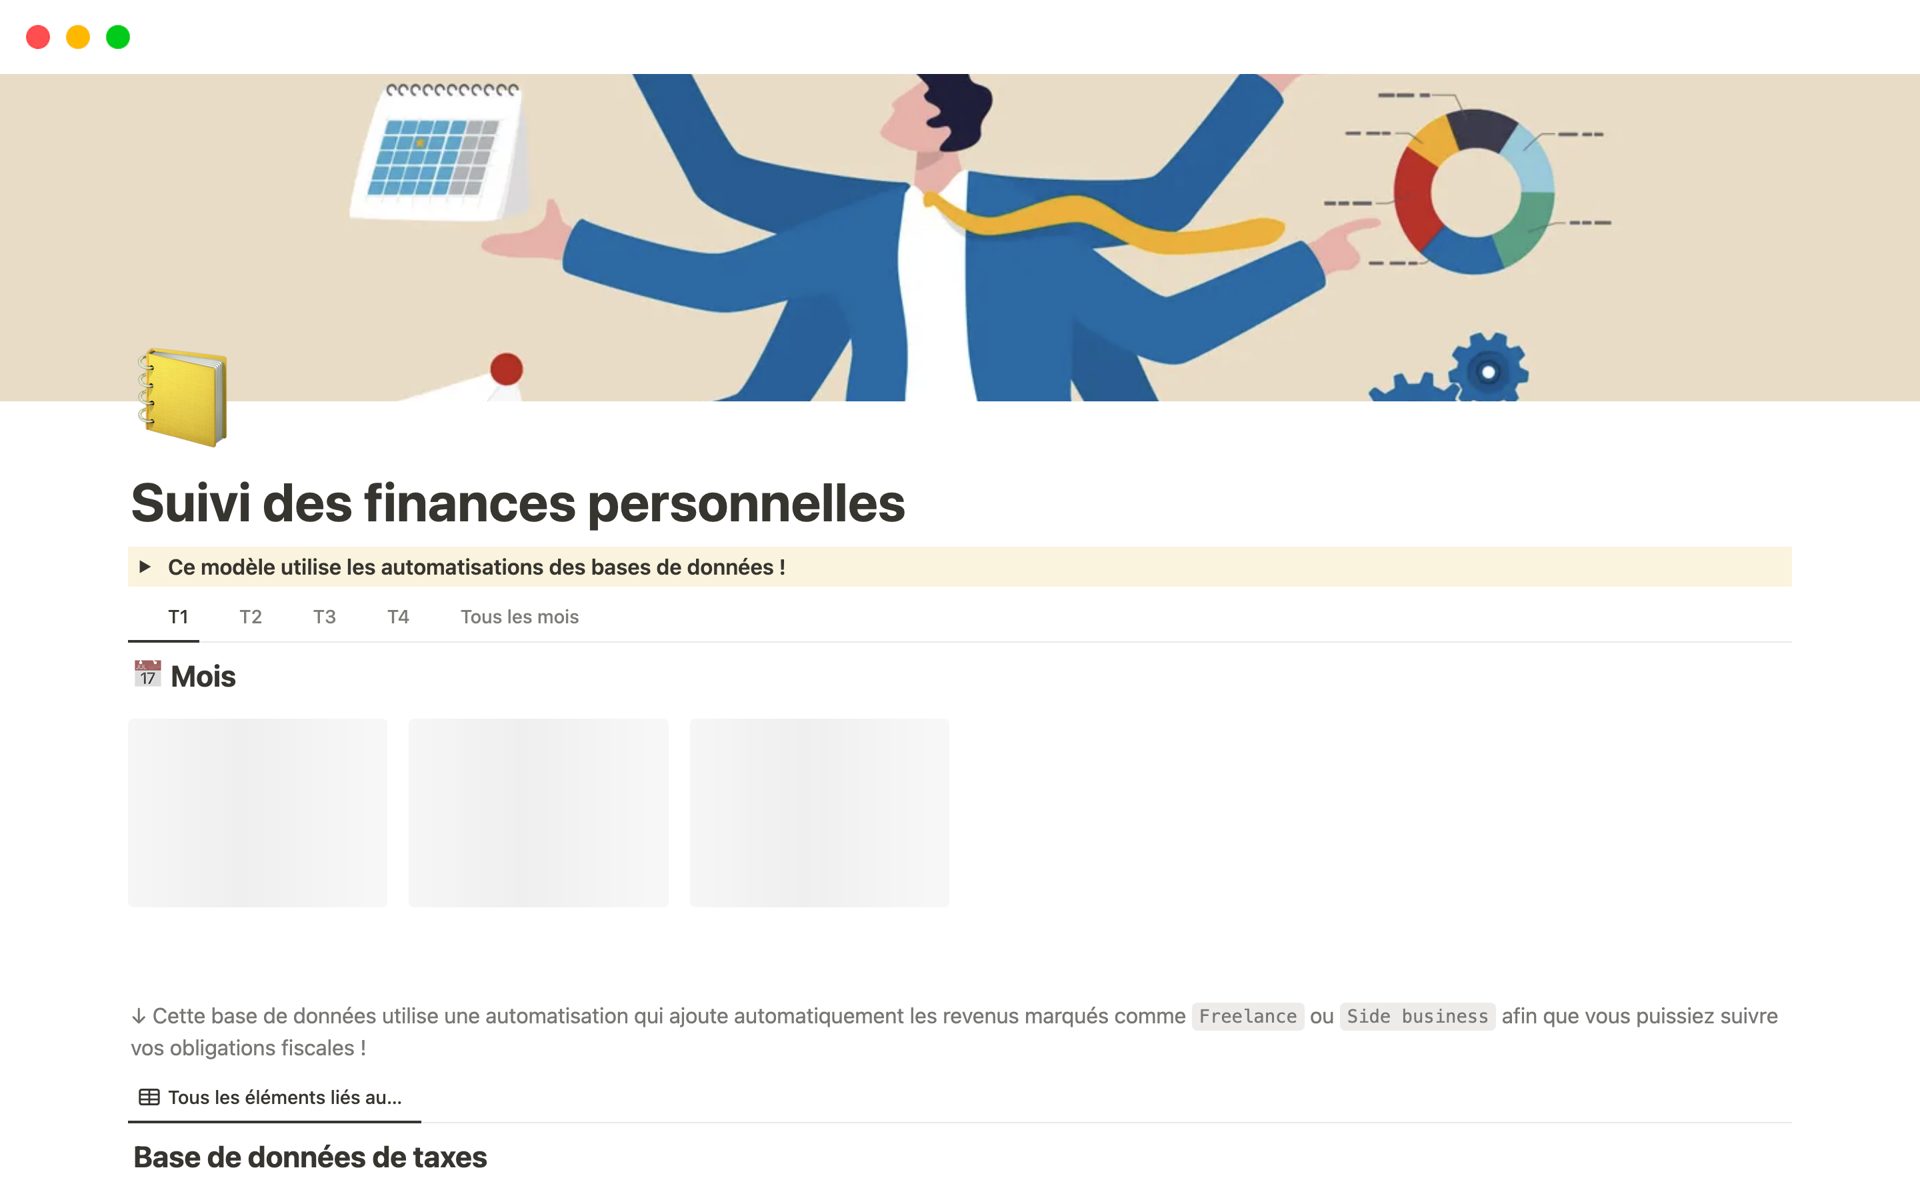 A template preview for Suivi des finances personnelles